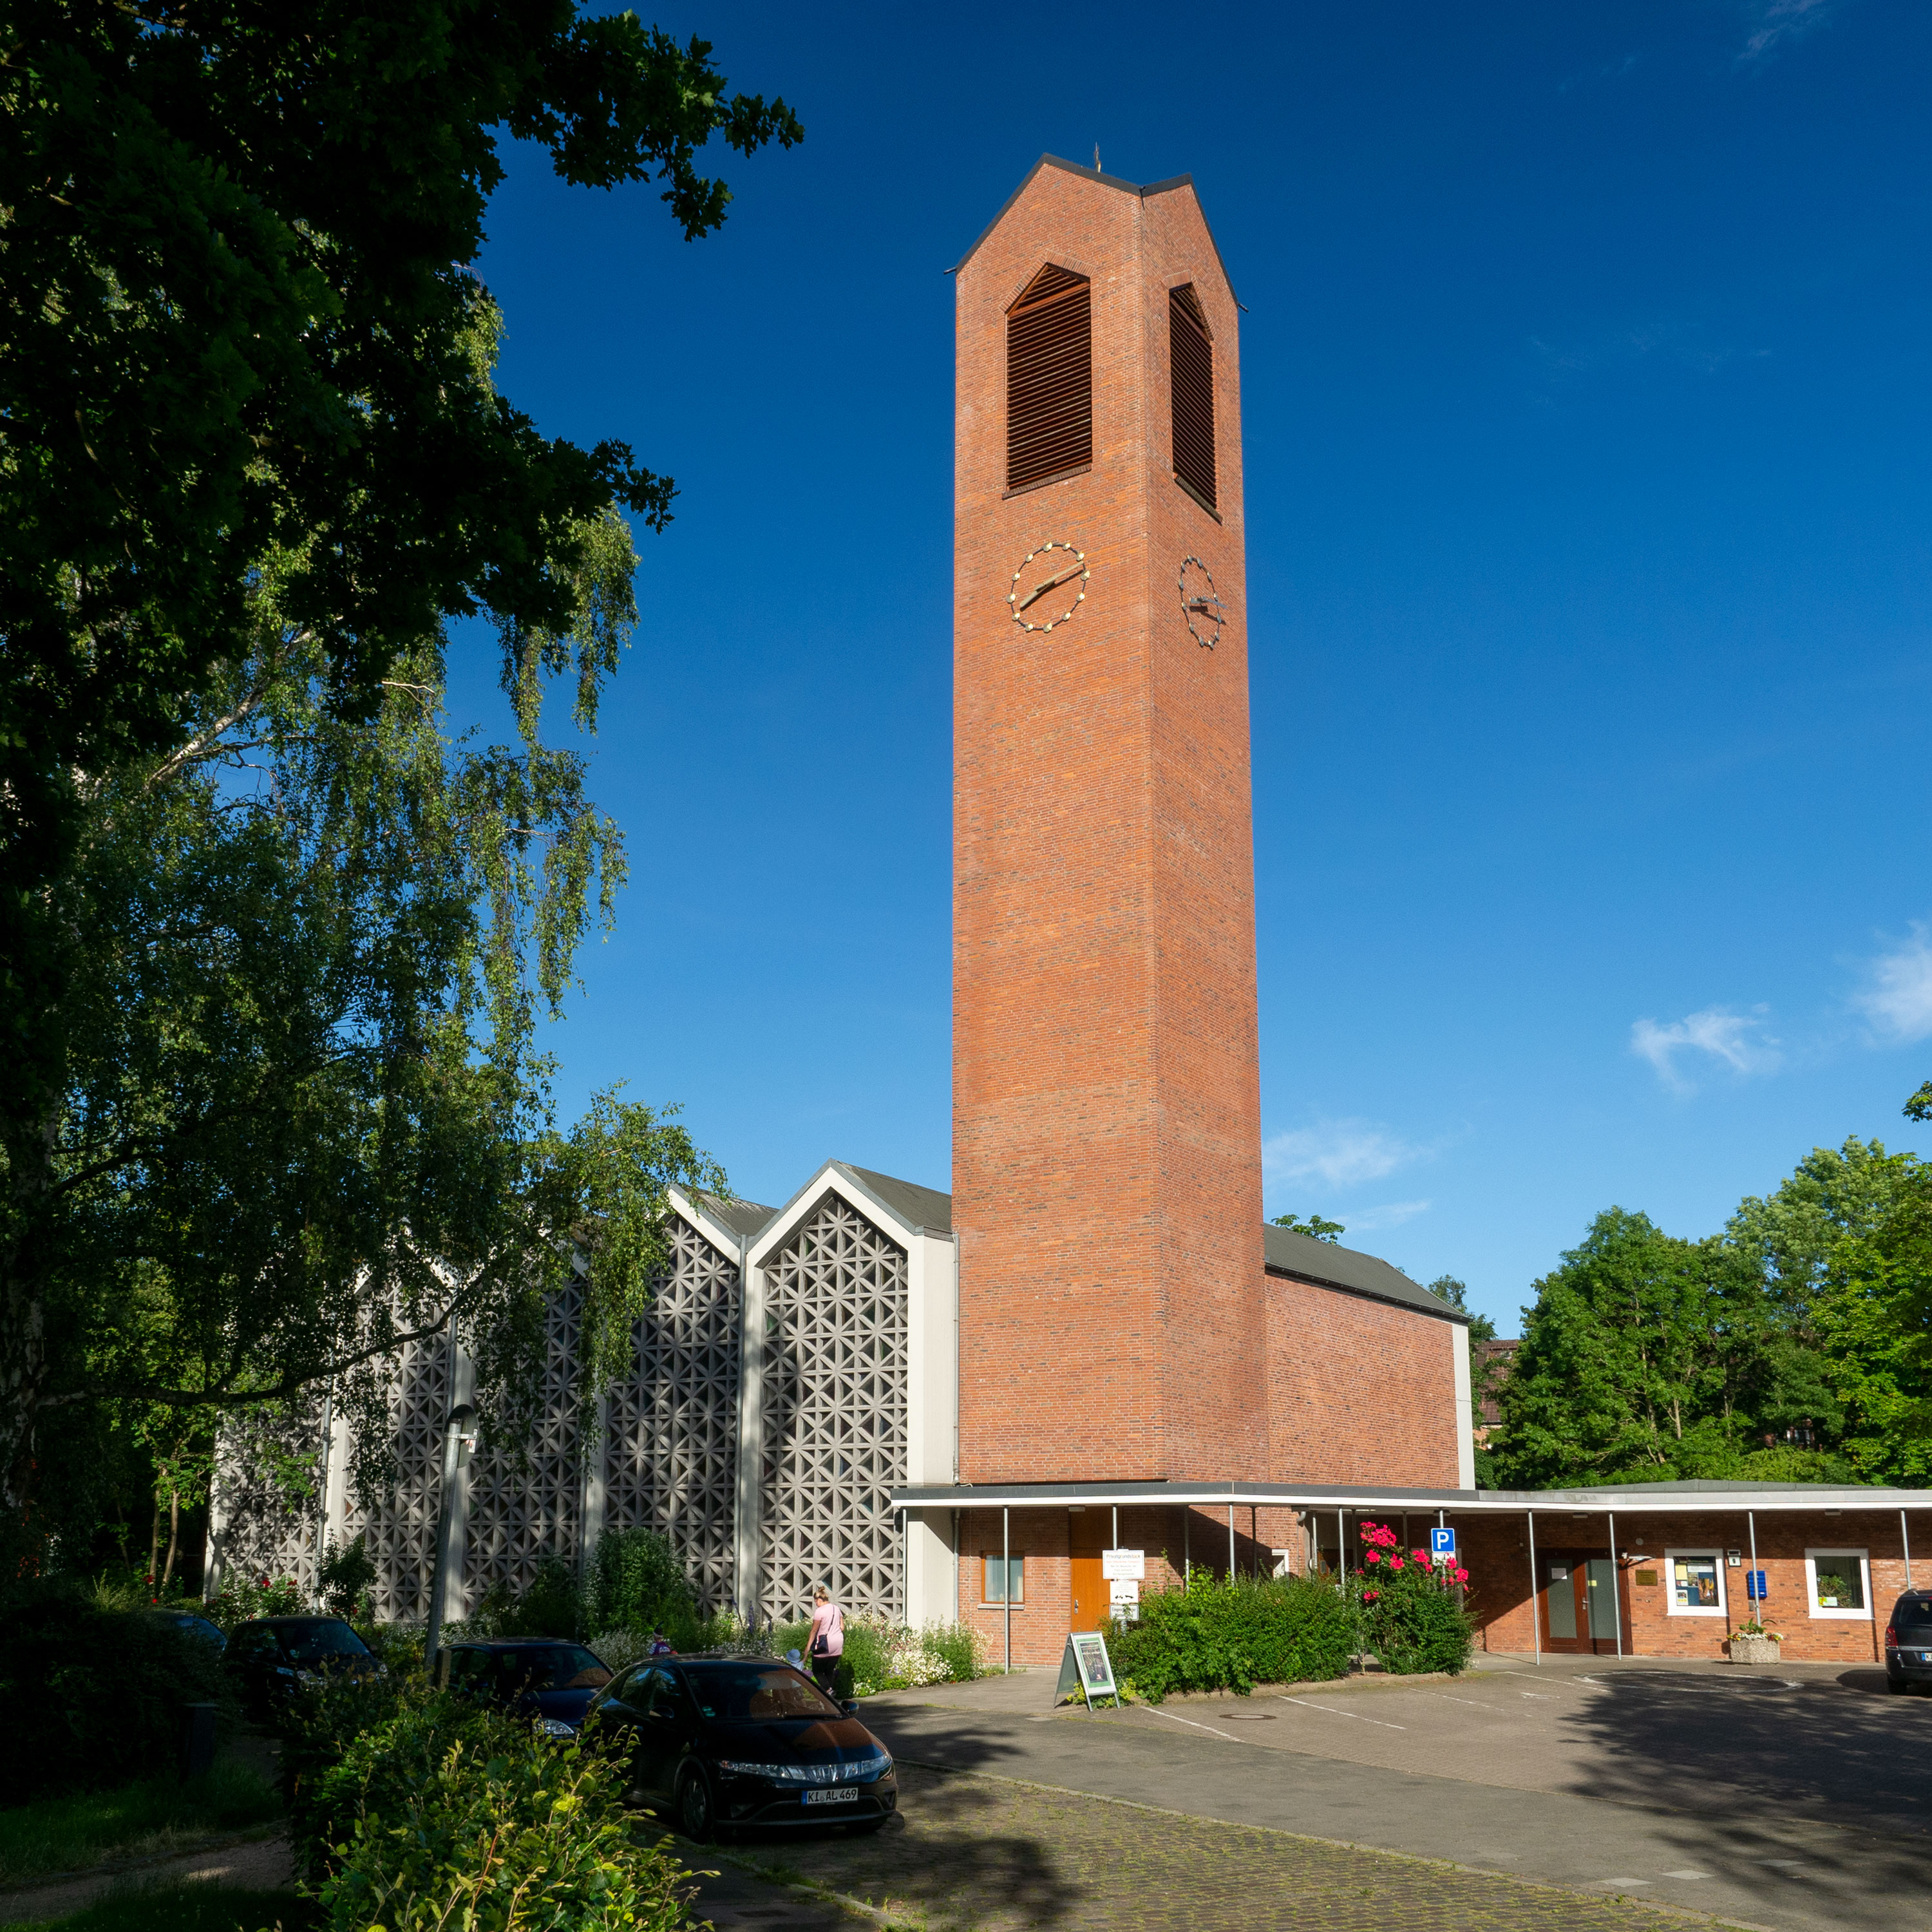 Paul-Gerhardt-Kirche